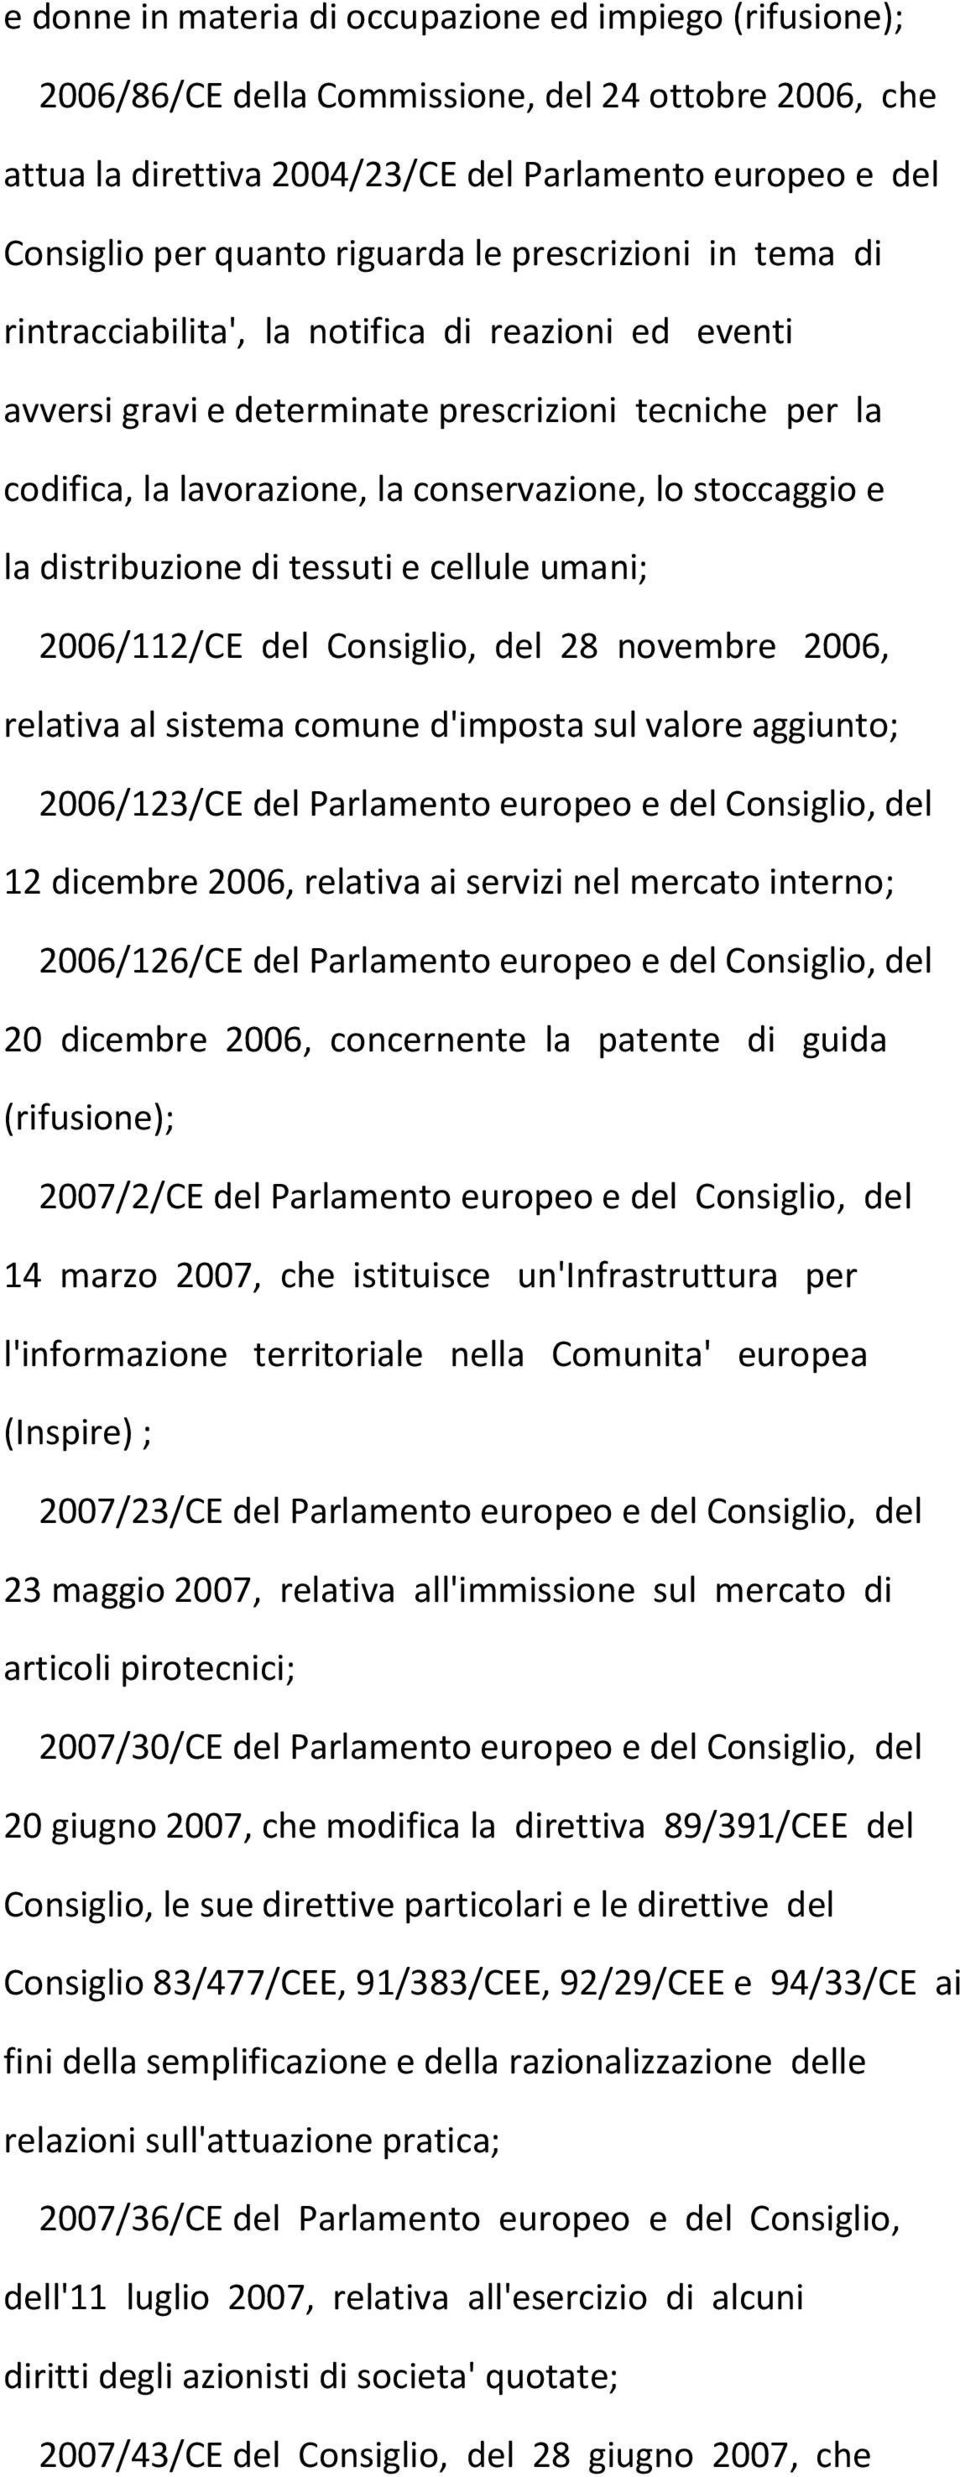 stoccaggio e la distribuzione di tessuti e cellule umani; 2006/112/CE del Consiglio, del 28 novembre 2006, relativa al sistema comune d'imposta sul valore aggiunto; 2006/123/CE del Parlamento europeo